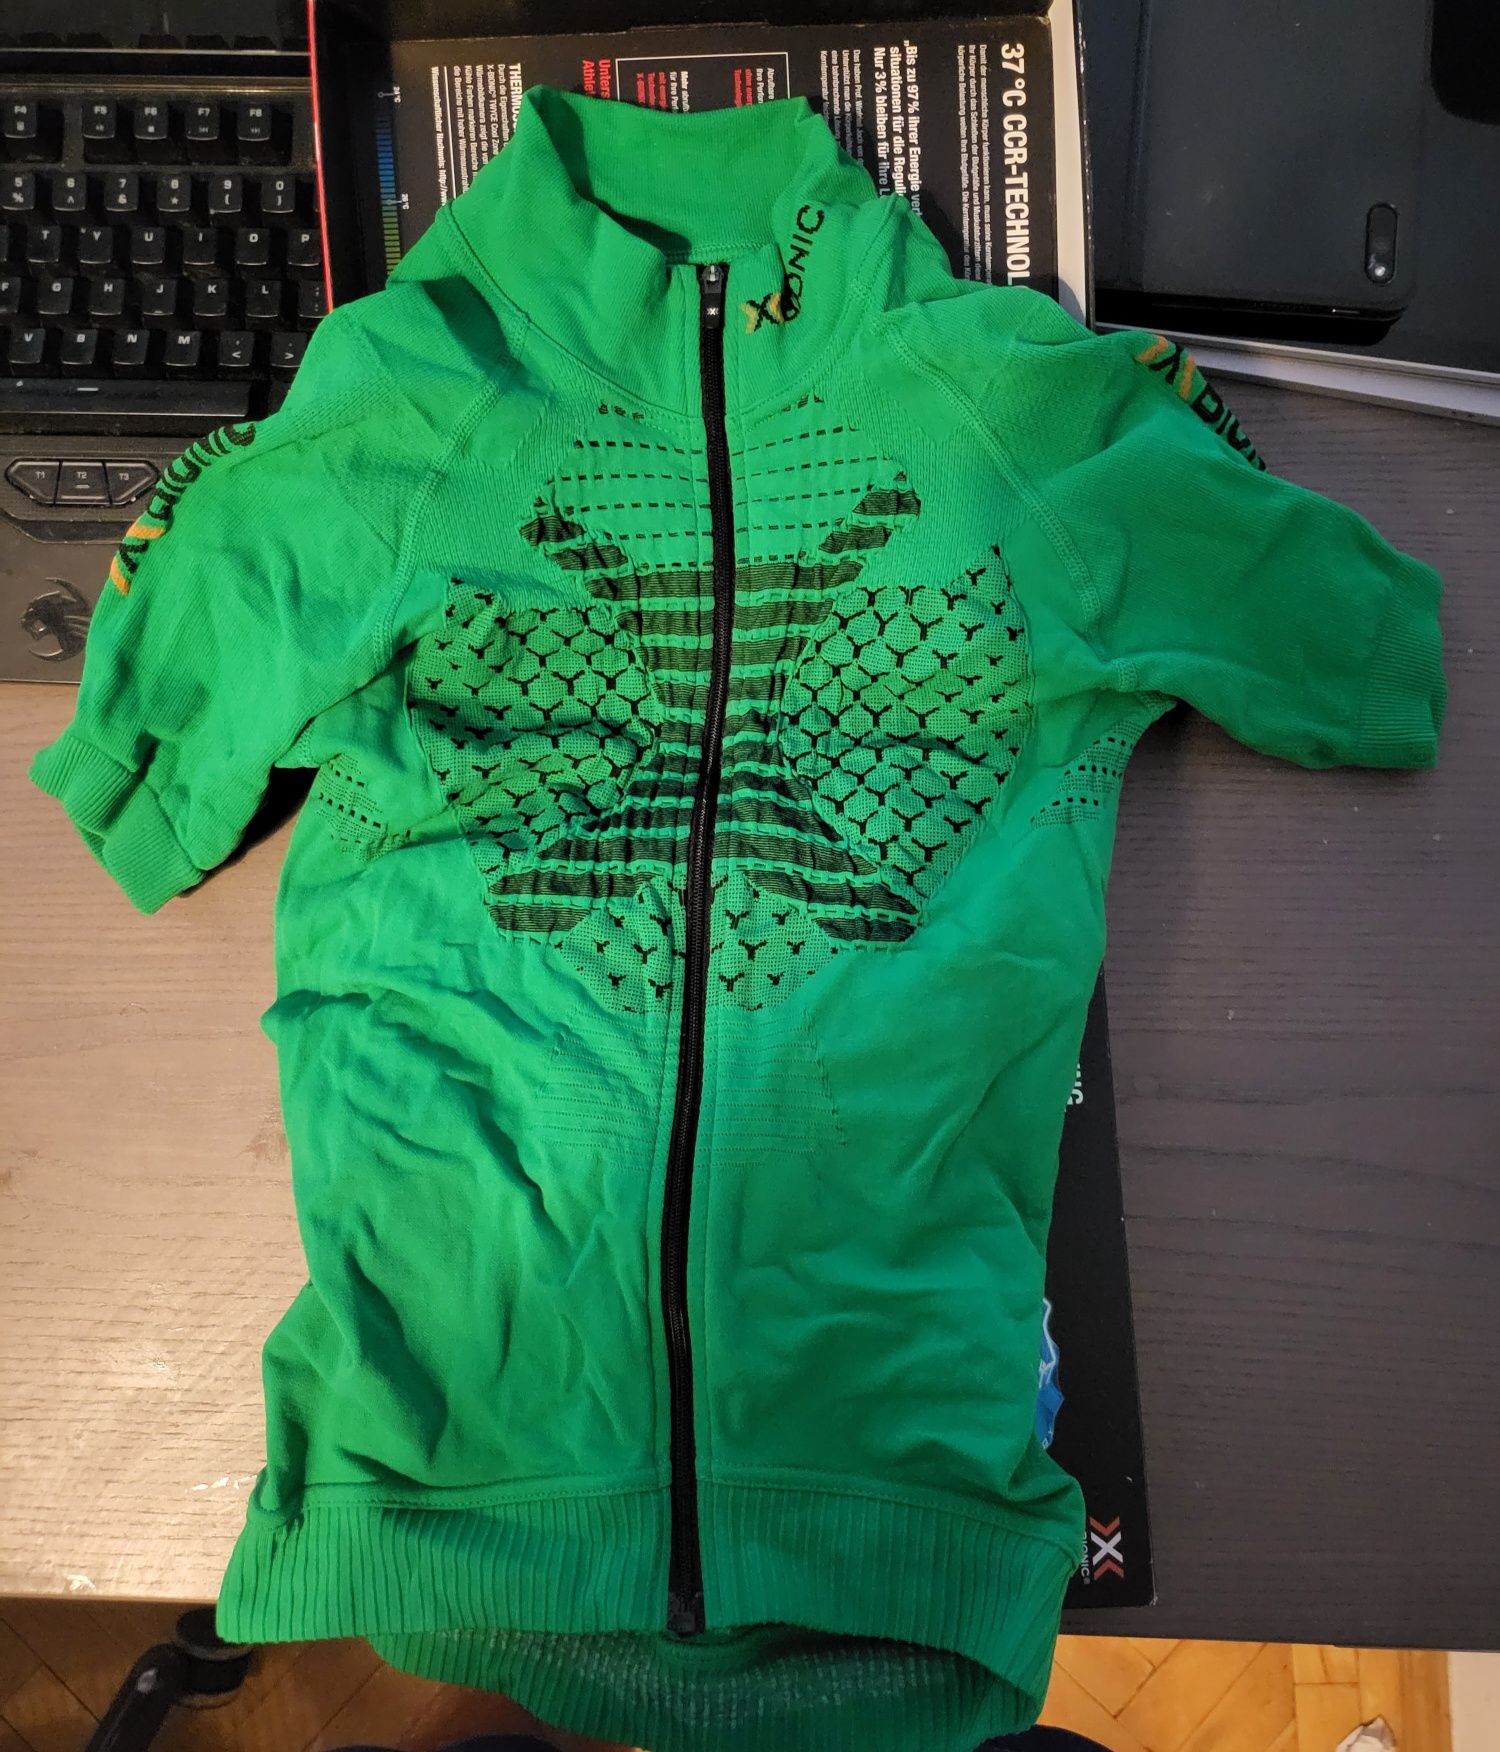 X-Bionic Koszulka kolarska Twyce zielona Jersey bionic xbionic rowerow